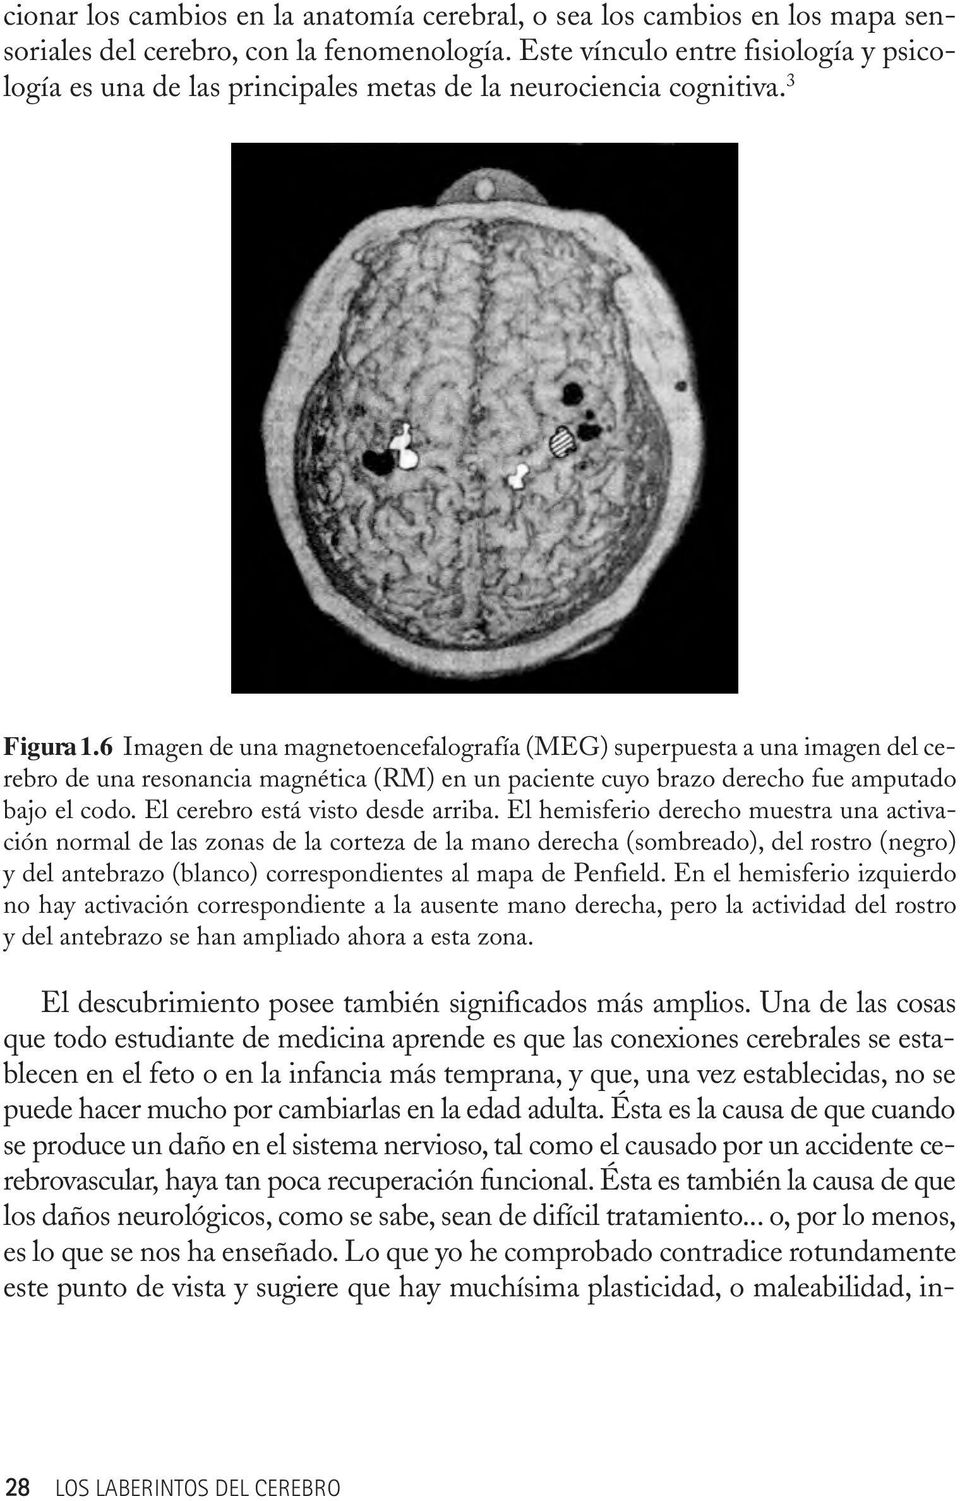 6 Imagen de una magnetoencefalografía (MEG) superpuesta a una imagen del cerebro de una resonancia magnética (RM) en un paciente cuyo brazo derecho fue amputado bajo el codo.